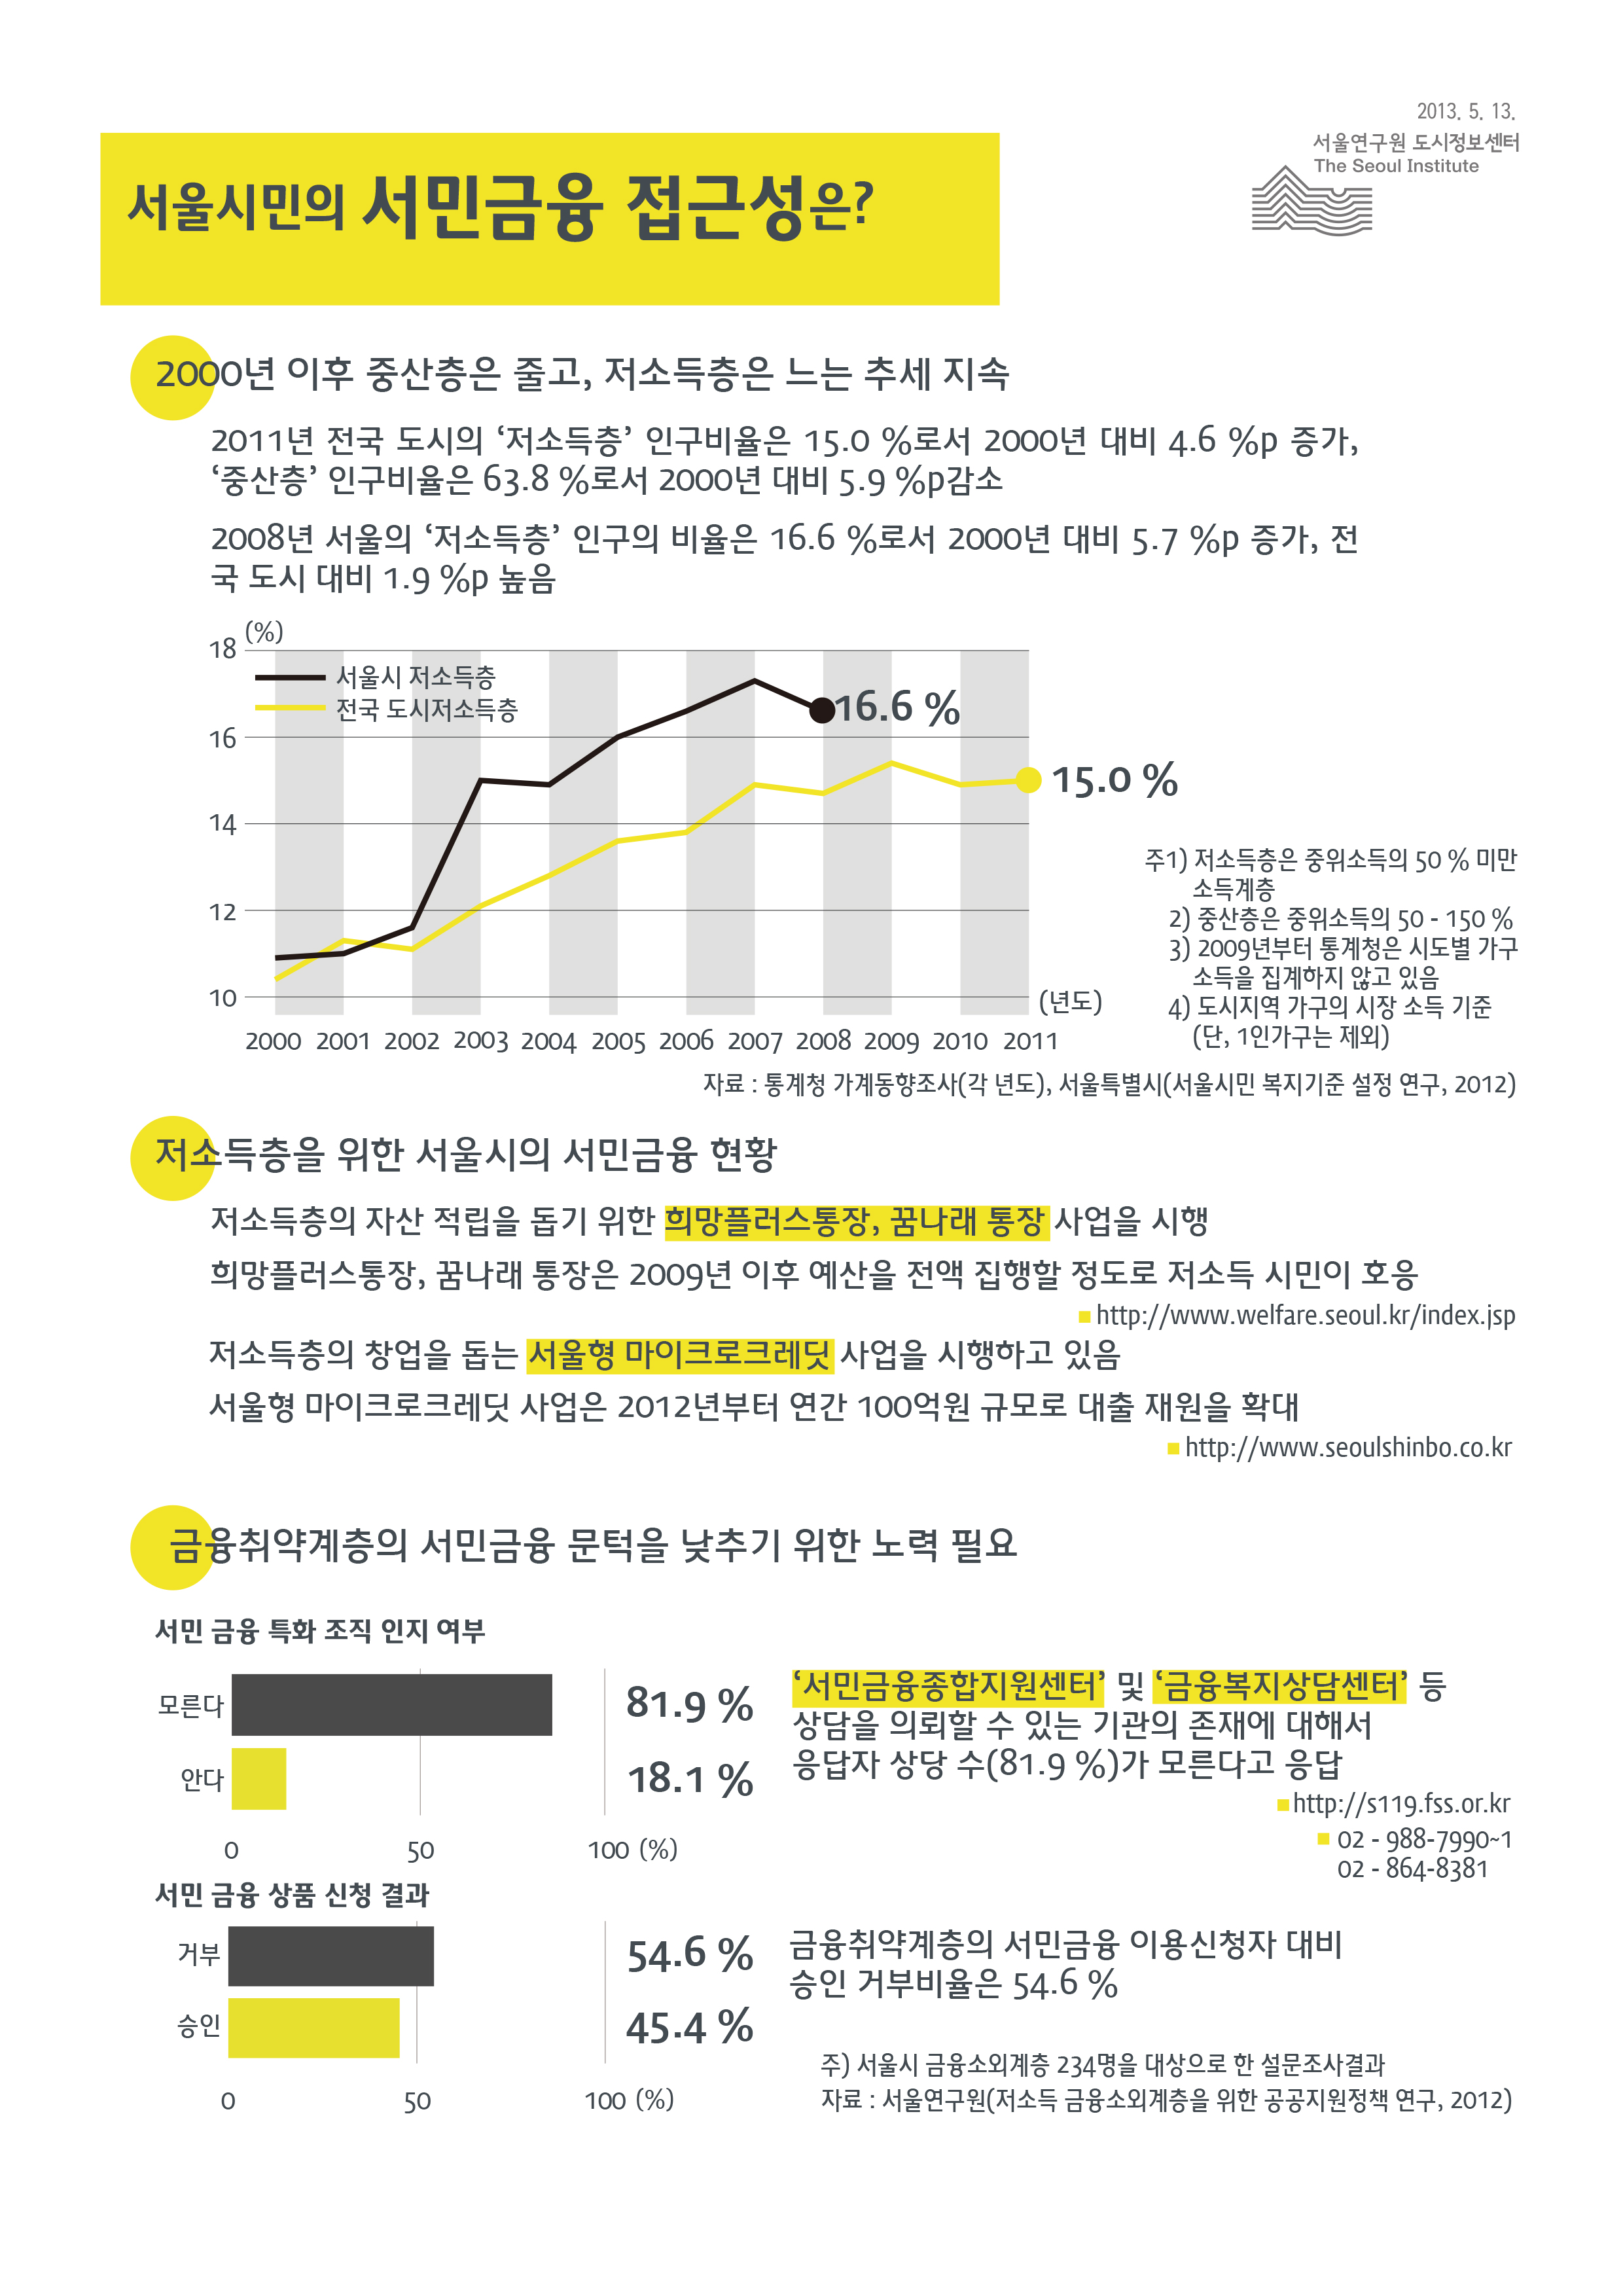 서울시민의 서민금융 접근성은? 서울인포그래픽스 제33호 2013년 5월 13일 2000년 이후 중산층은 서민금융 접근성 줄고, 저소득층은 느는 추세 지속됨으로 정리 될 수 있습니다. 인포그래픽으로 제공되는 그래픽은 하단에 표로 자세히 제공됩니다.